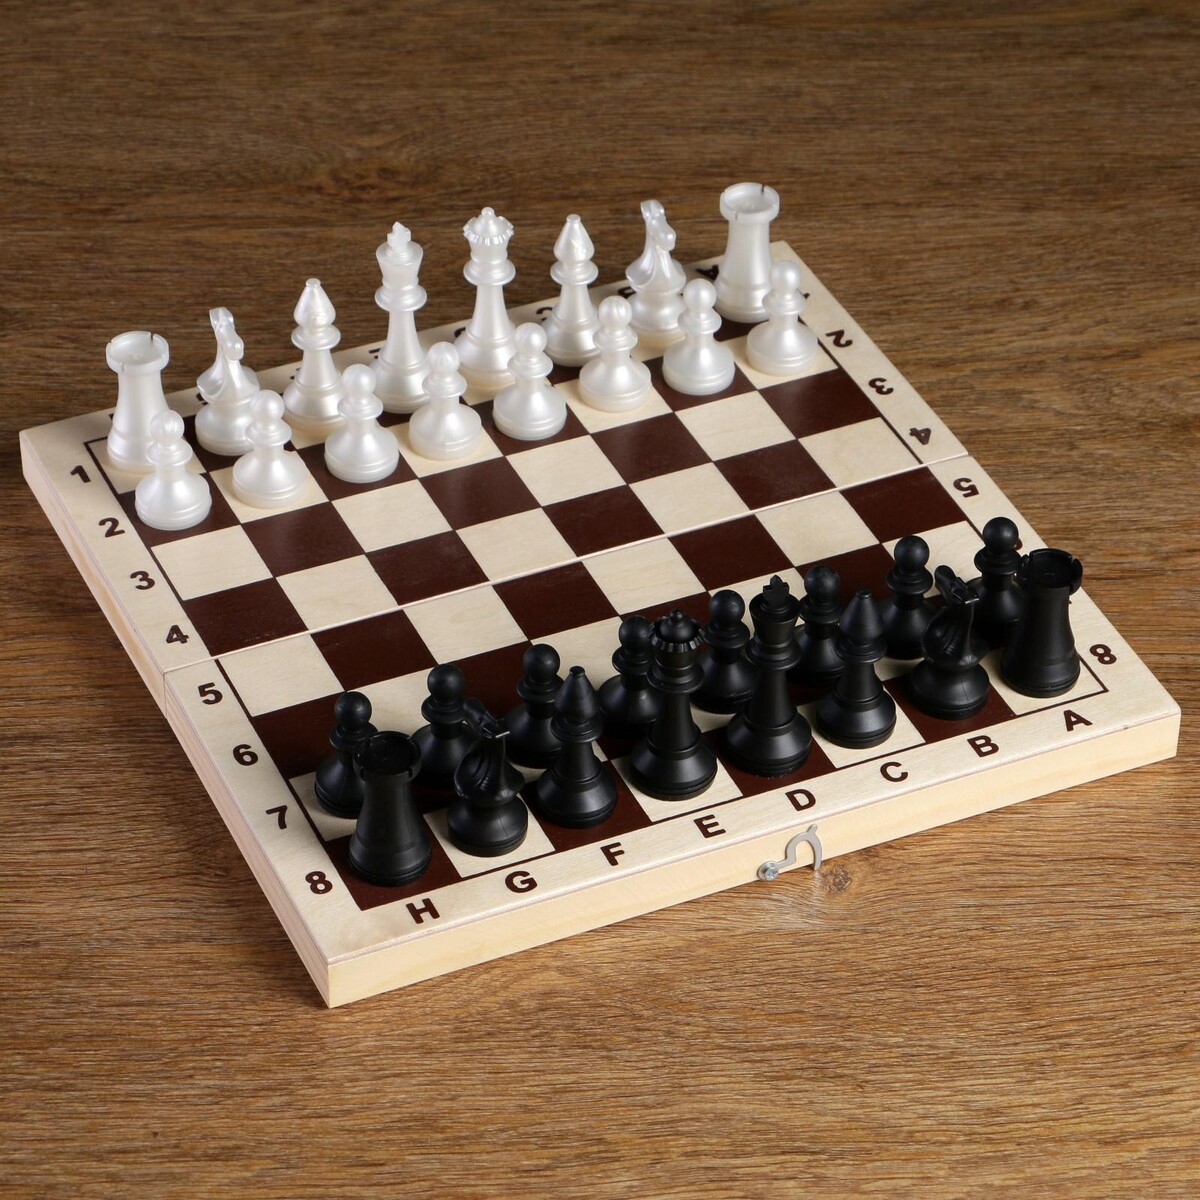 Шахматные фигуры обиходные, пластик, король h-7.2 см, пешка 4 см шахматные фигуры пластик король h 7 5 см пешка h 3 5 см